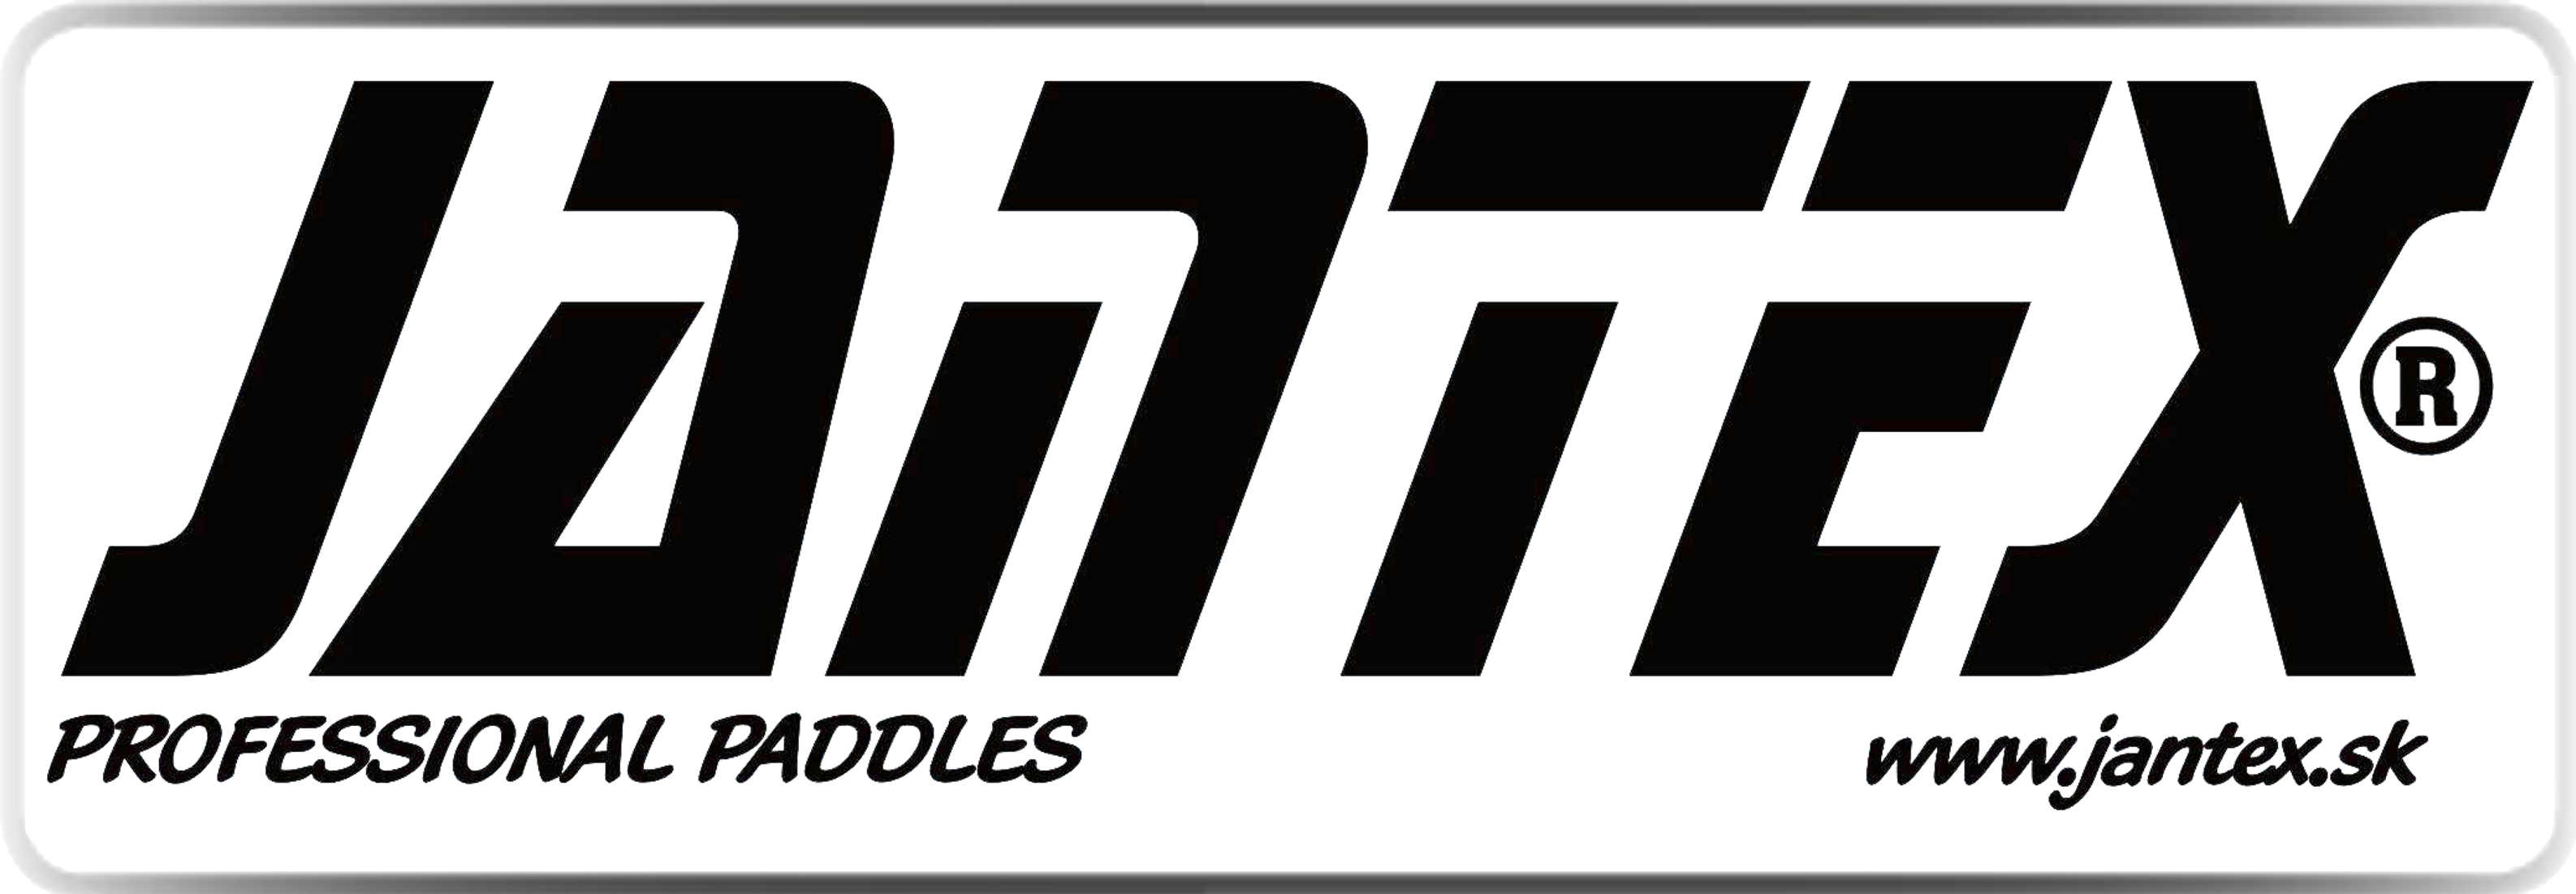 Logo-Jantex